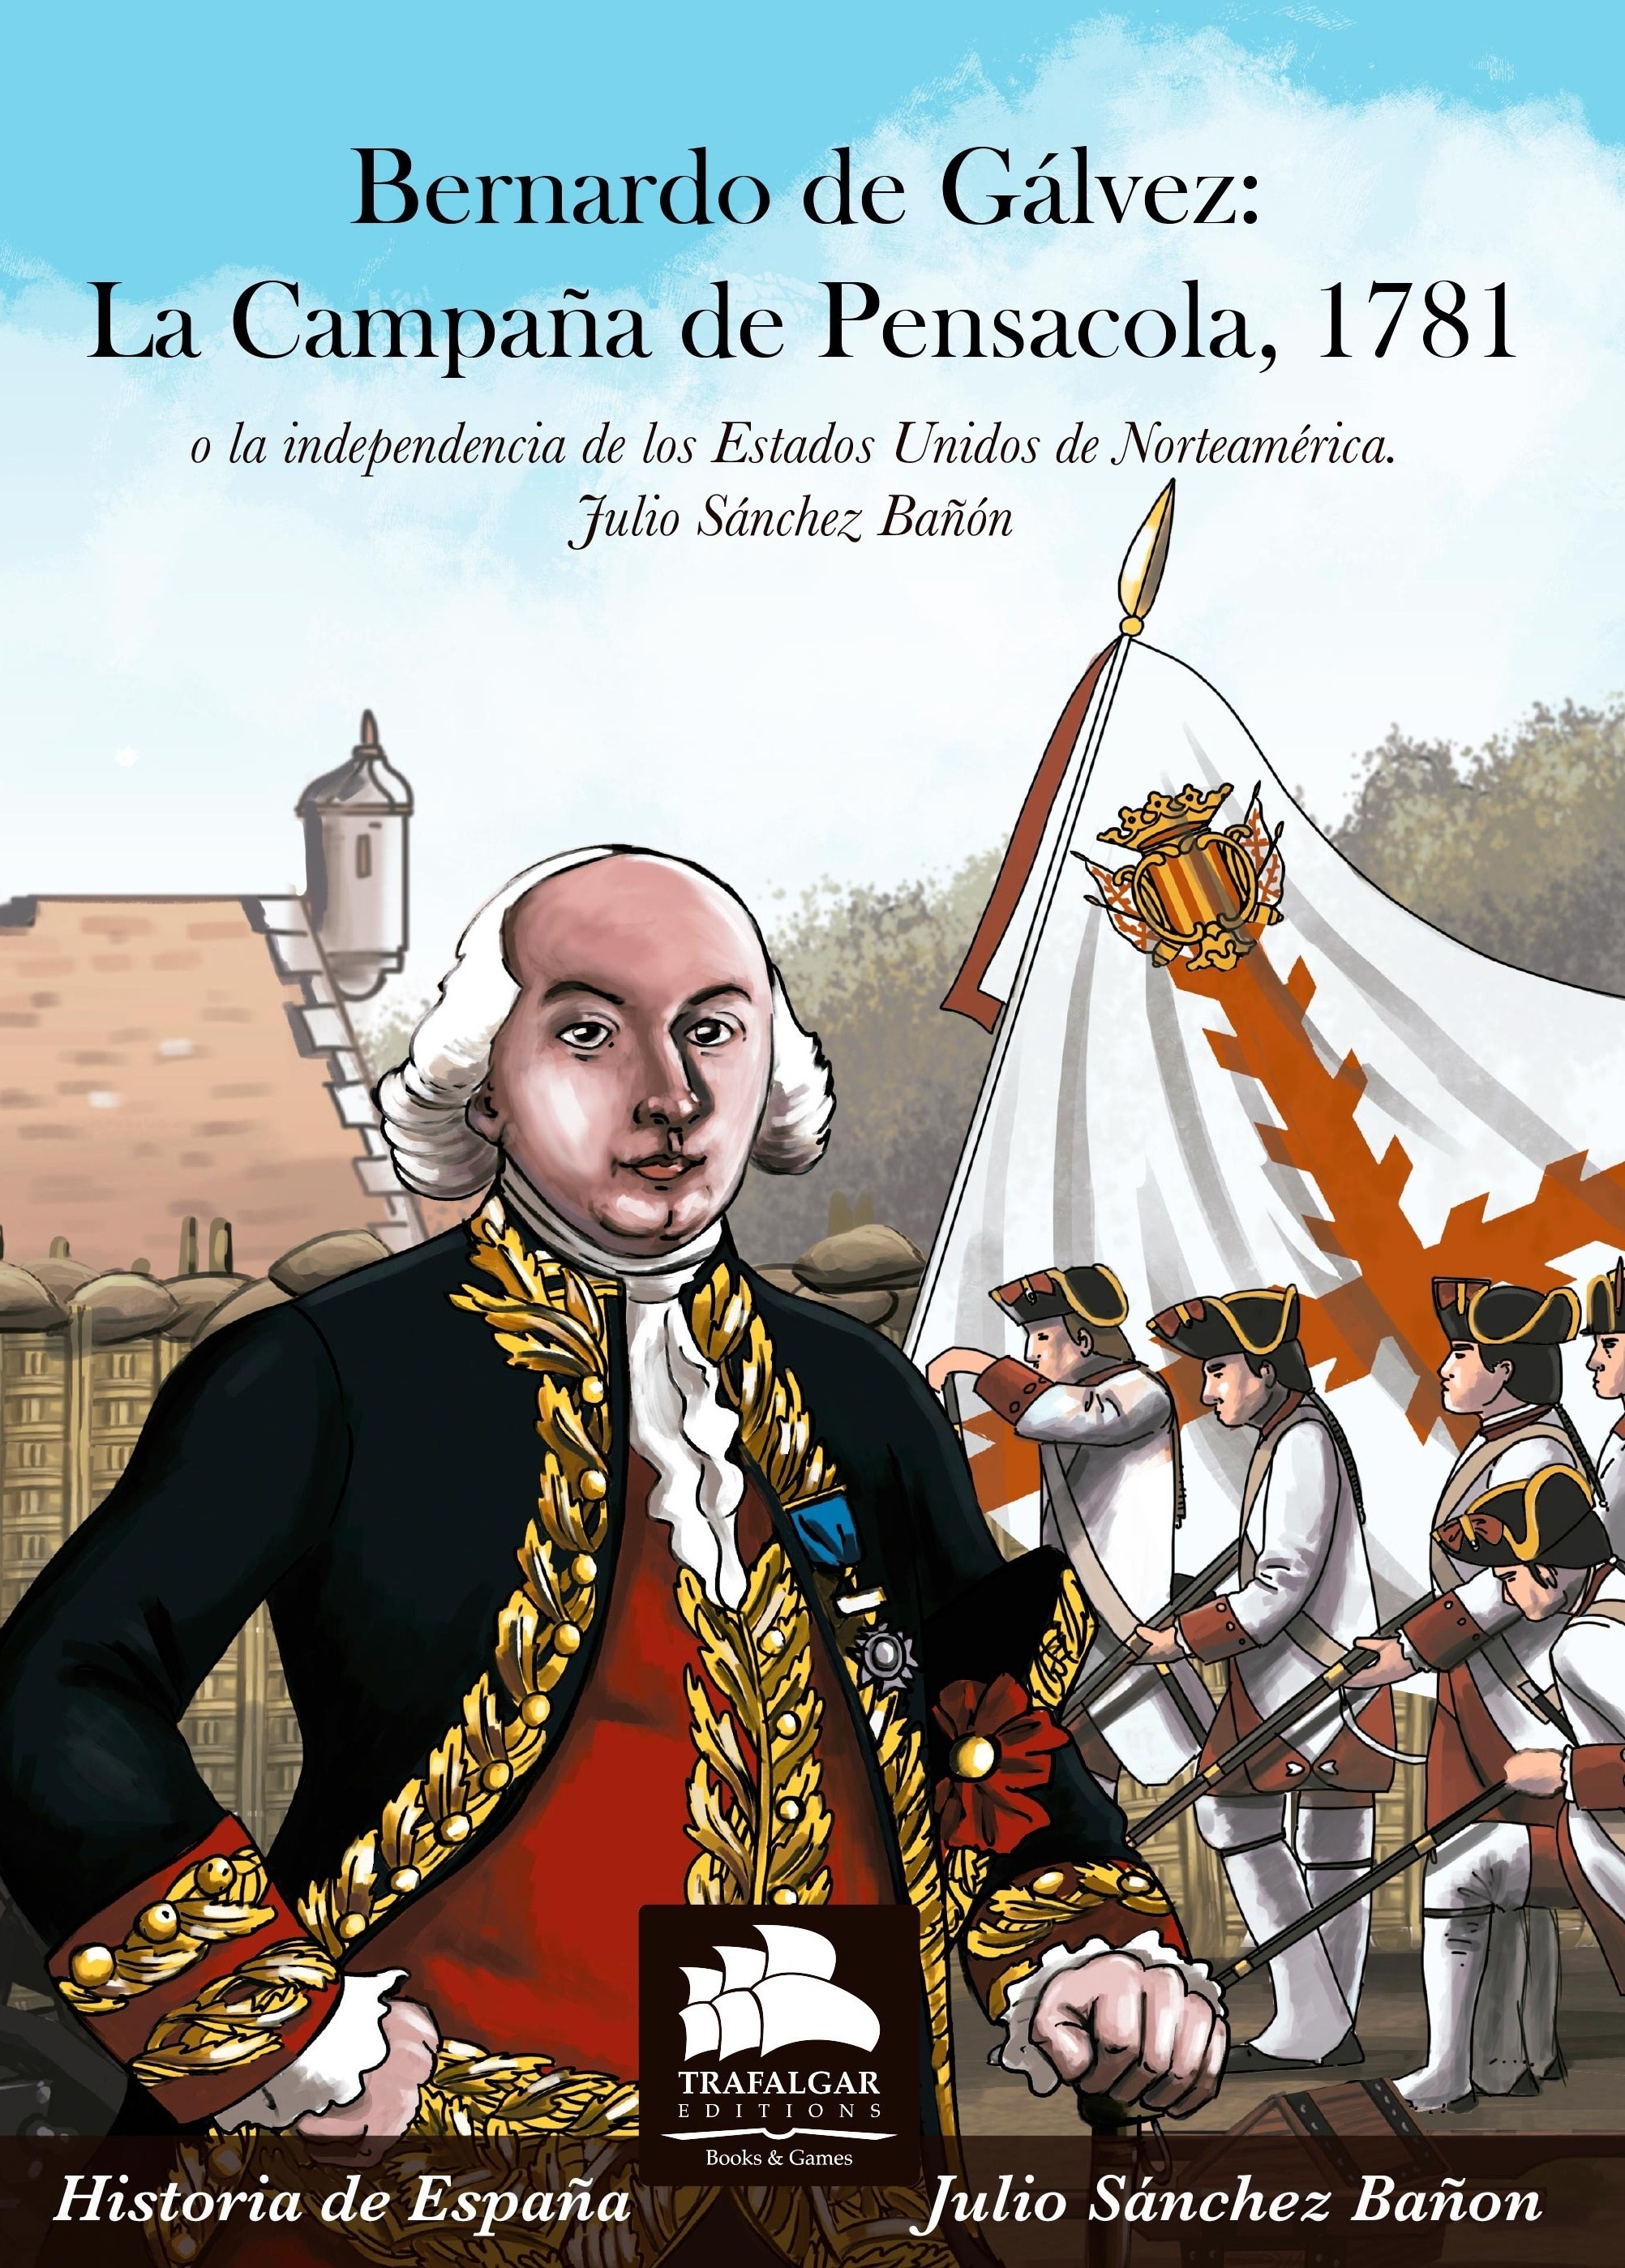 Bernardo de Gálvez: La campaña de Pensacola, 1781 "O la independencia de los Estados Unidos de Norteamérica"